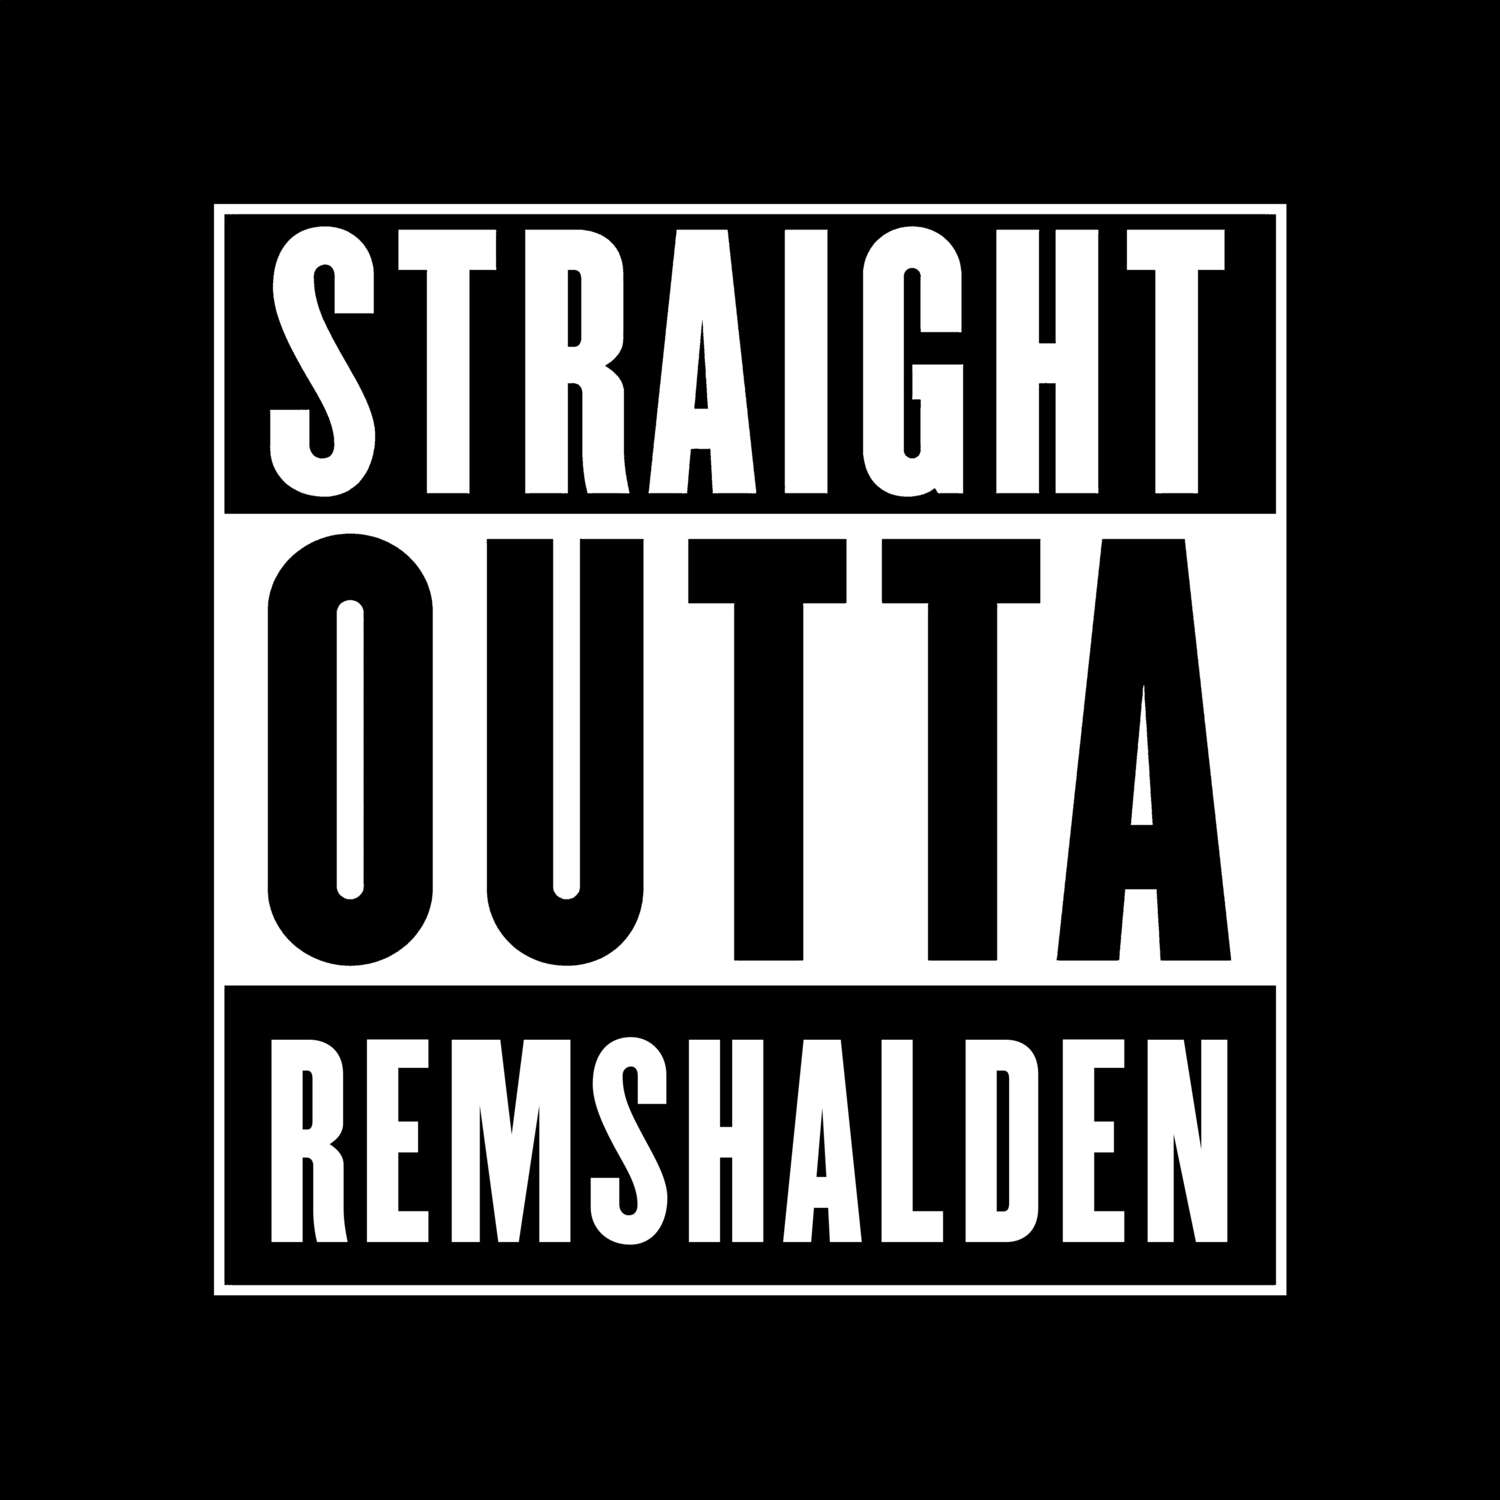 Remshalden T-Shirt »Straight Outta«